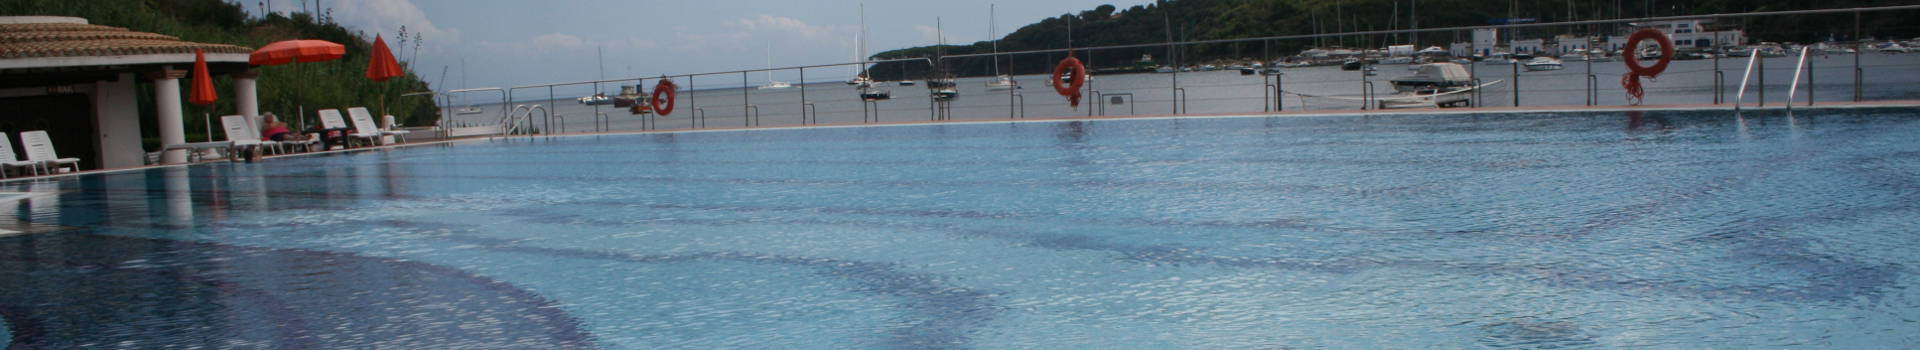 Isola d'Elba: manutenzione e costruzione piscine